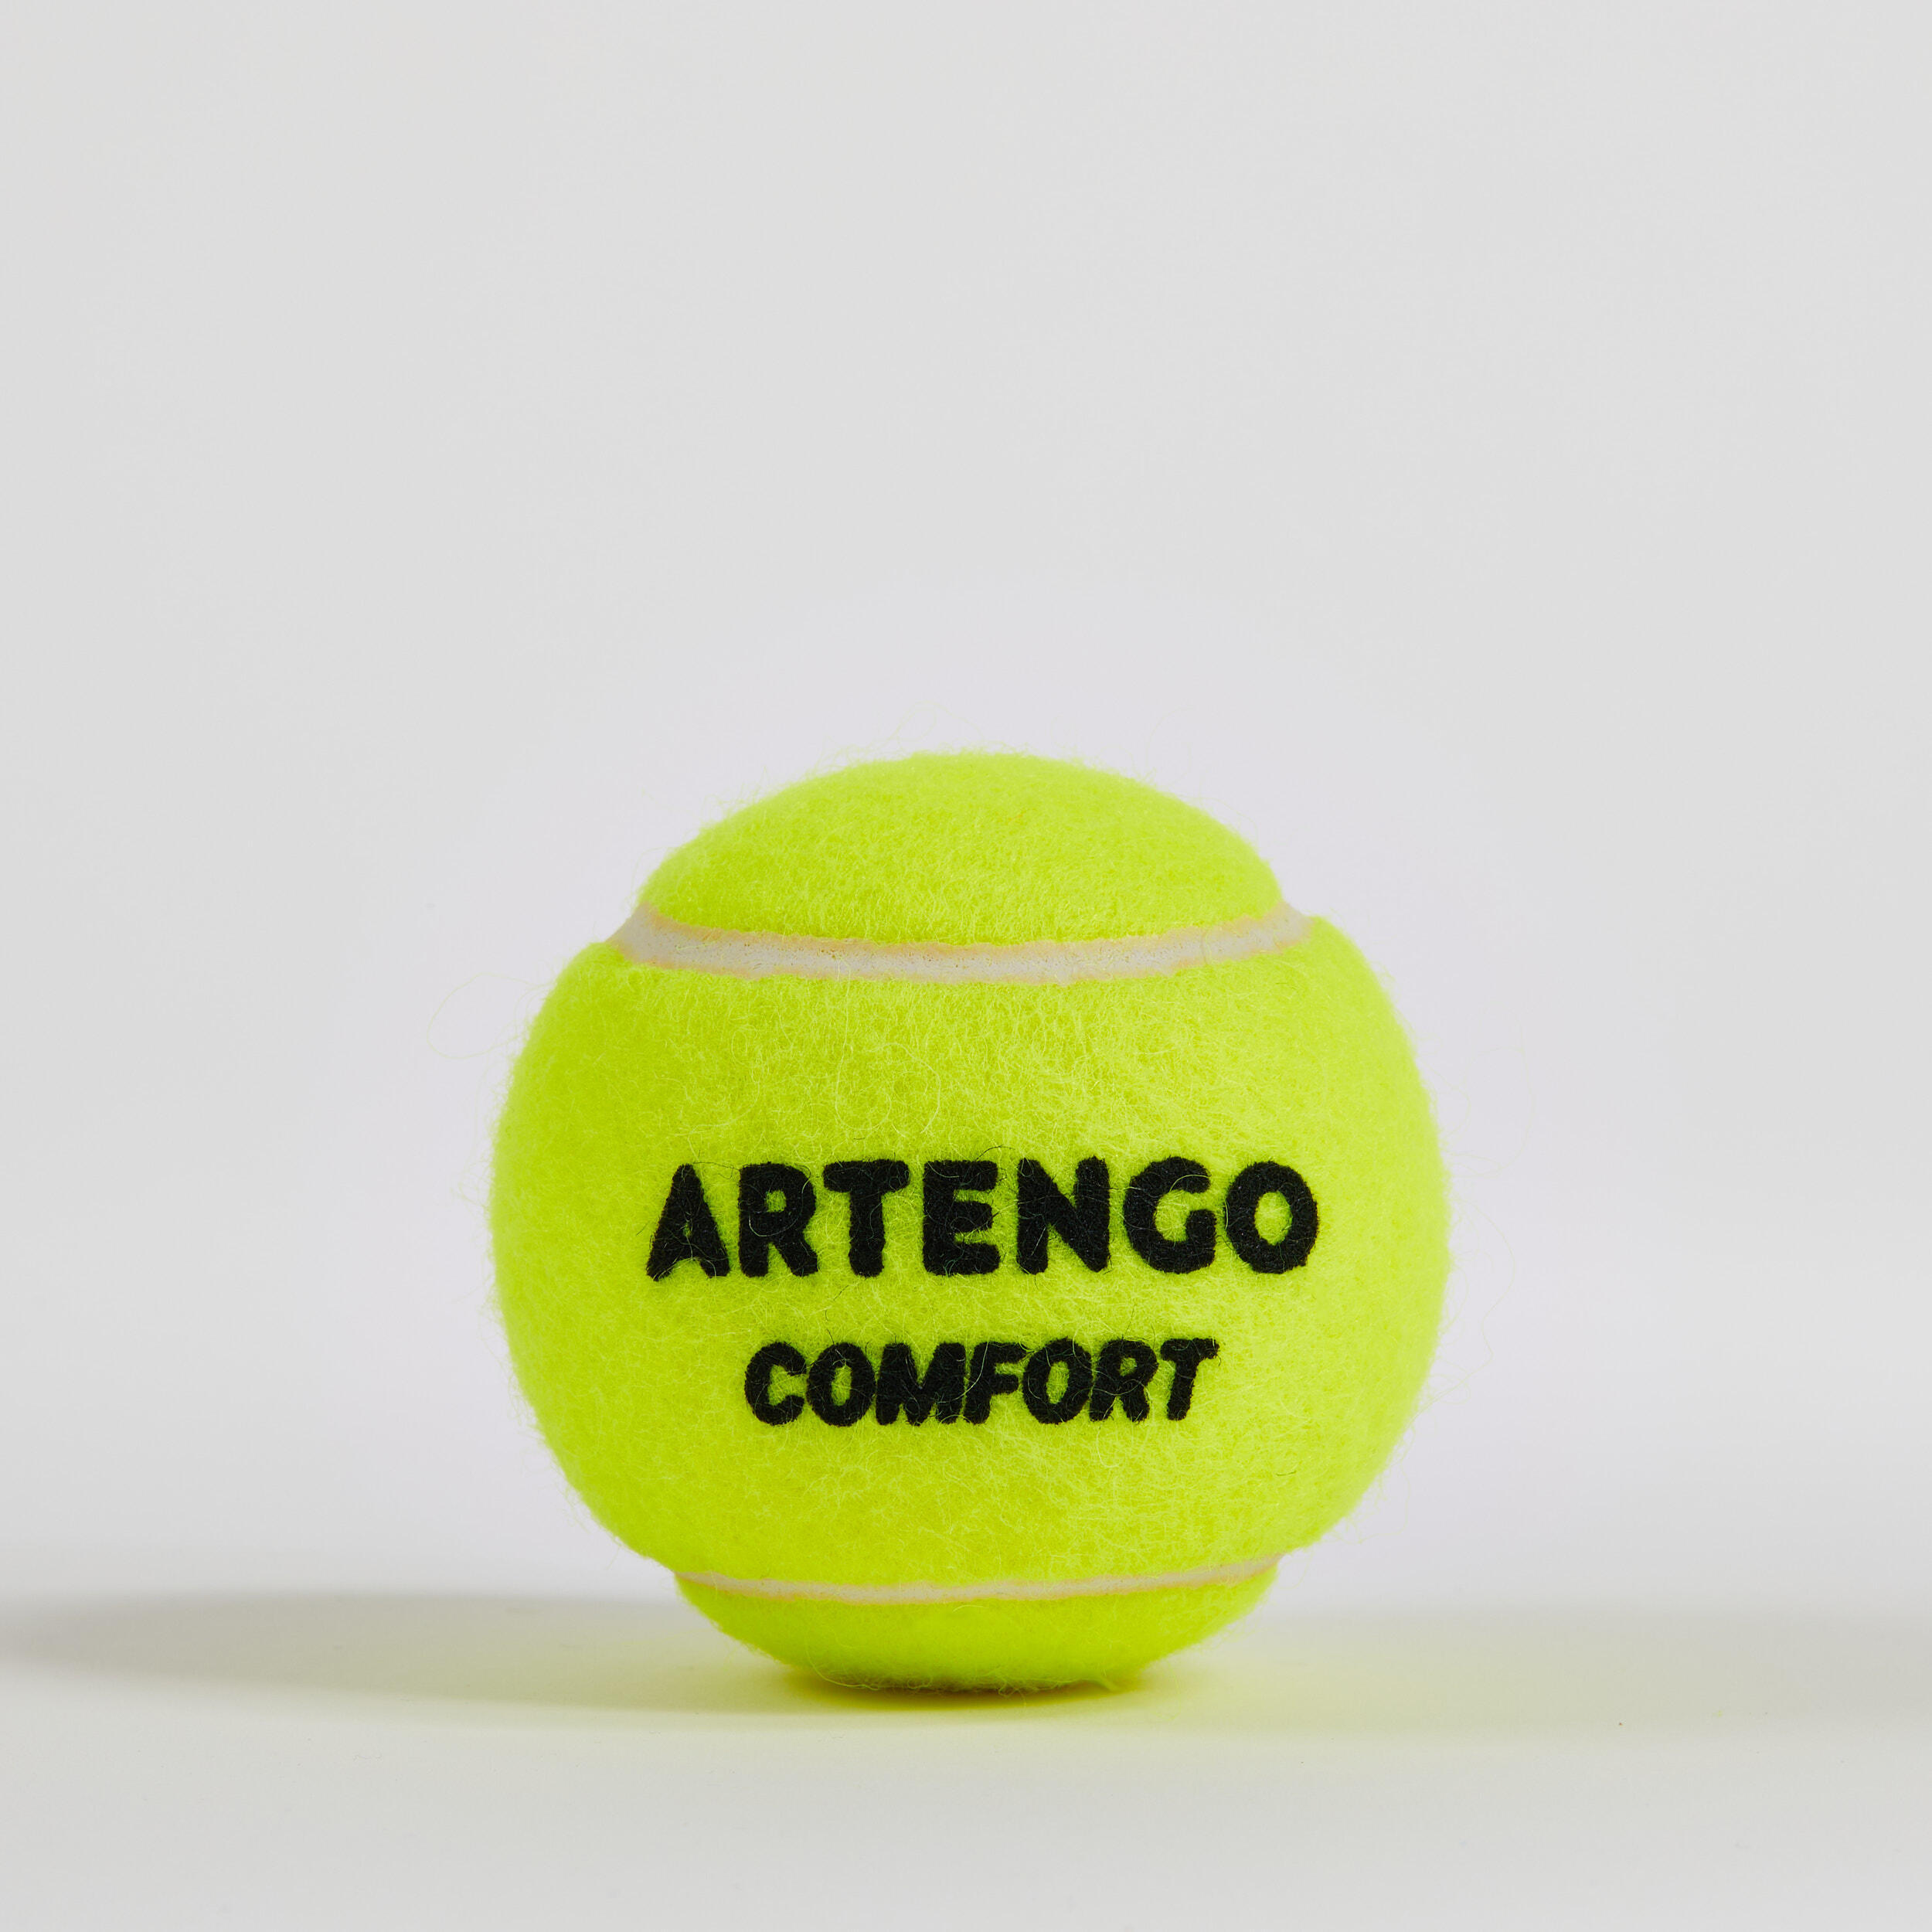 Versatile Tennis Balls Comfort 3-Pack - Yellow 4/4